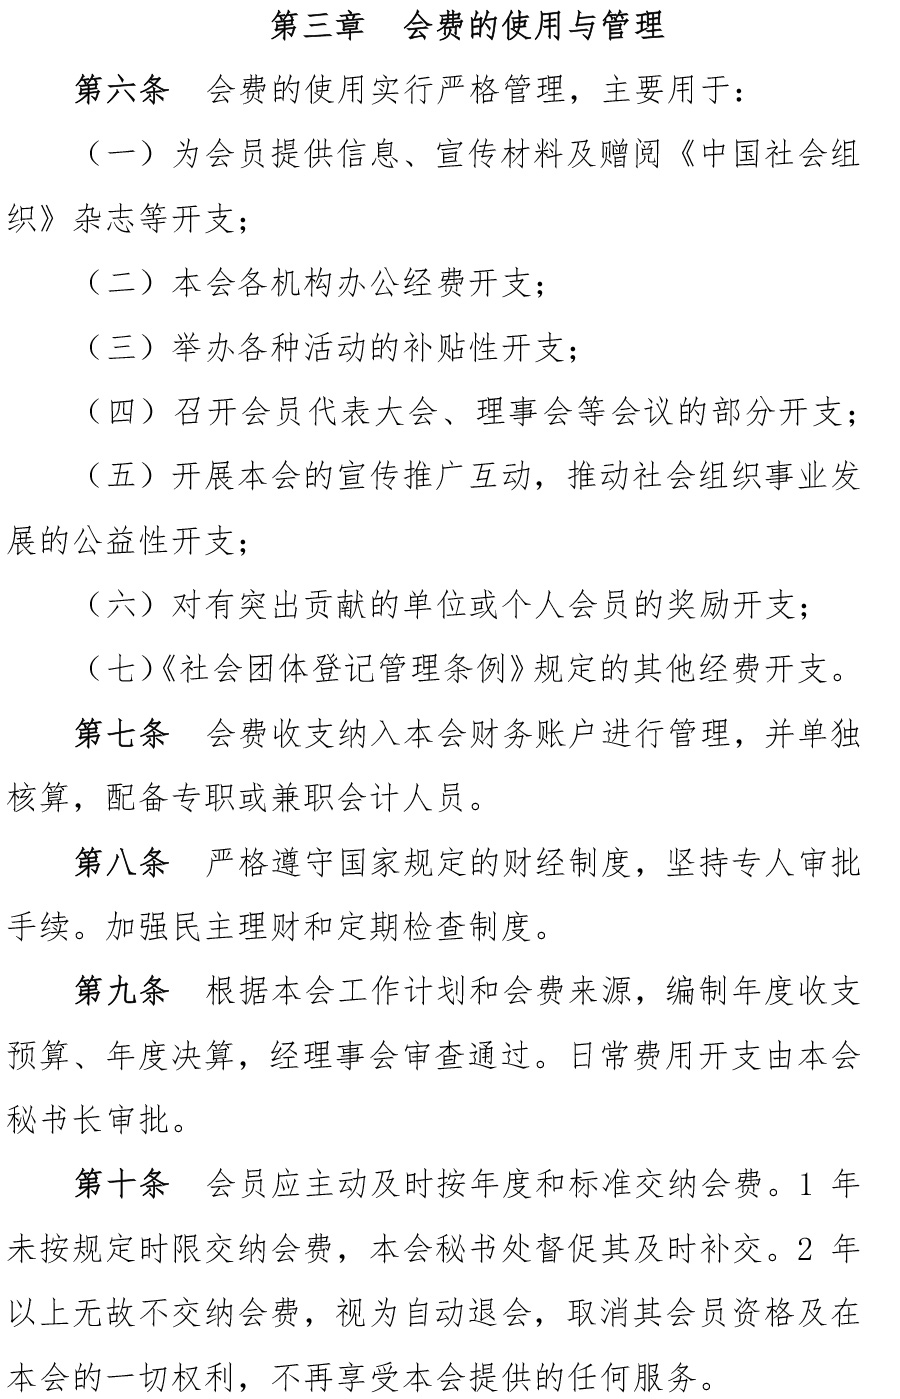 中国社会组织促进会会费管理办法-2.jpg